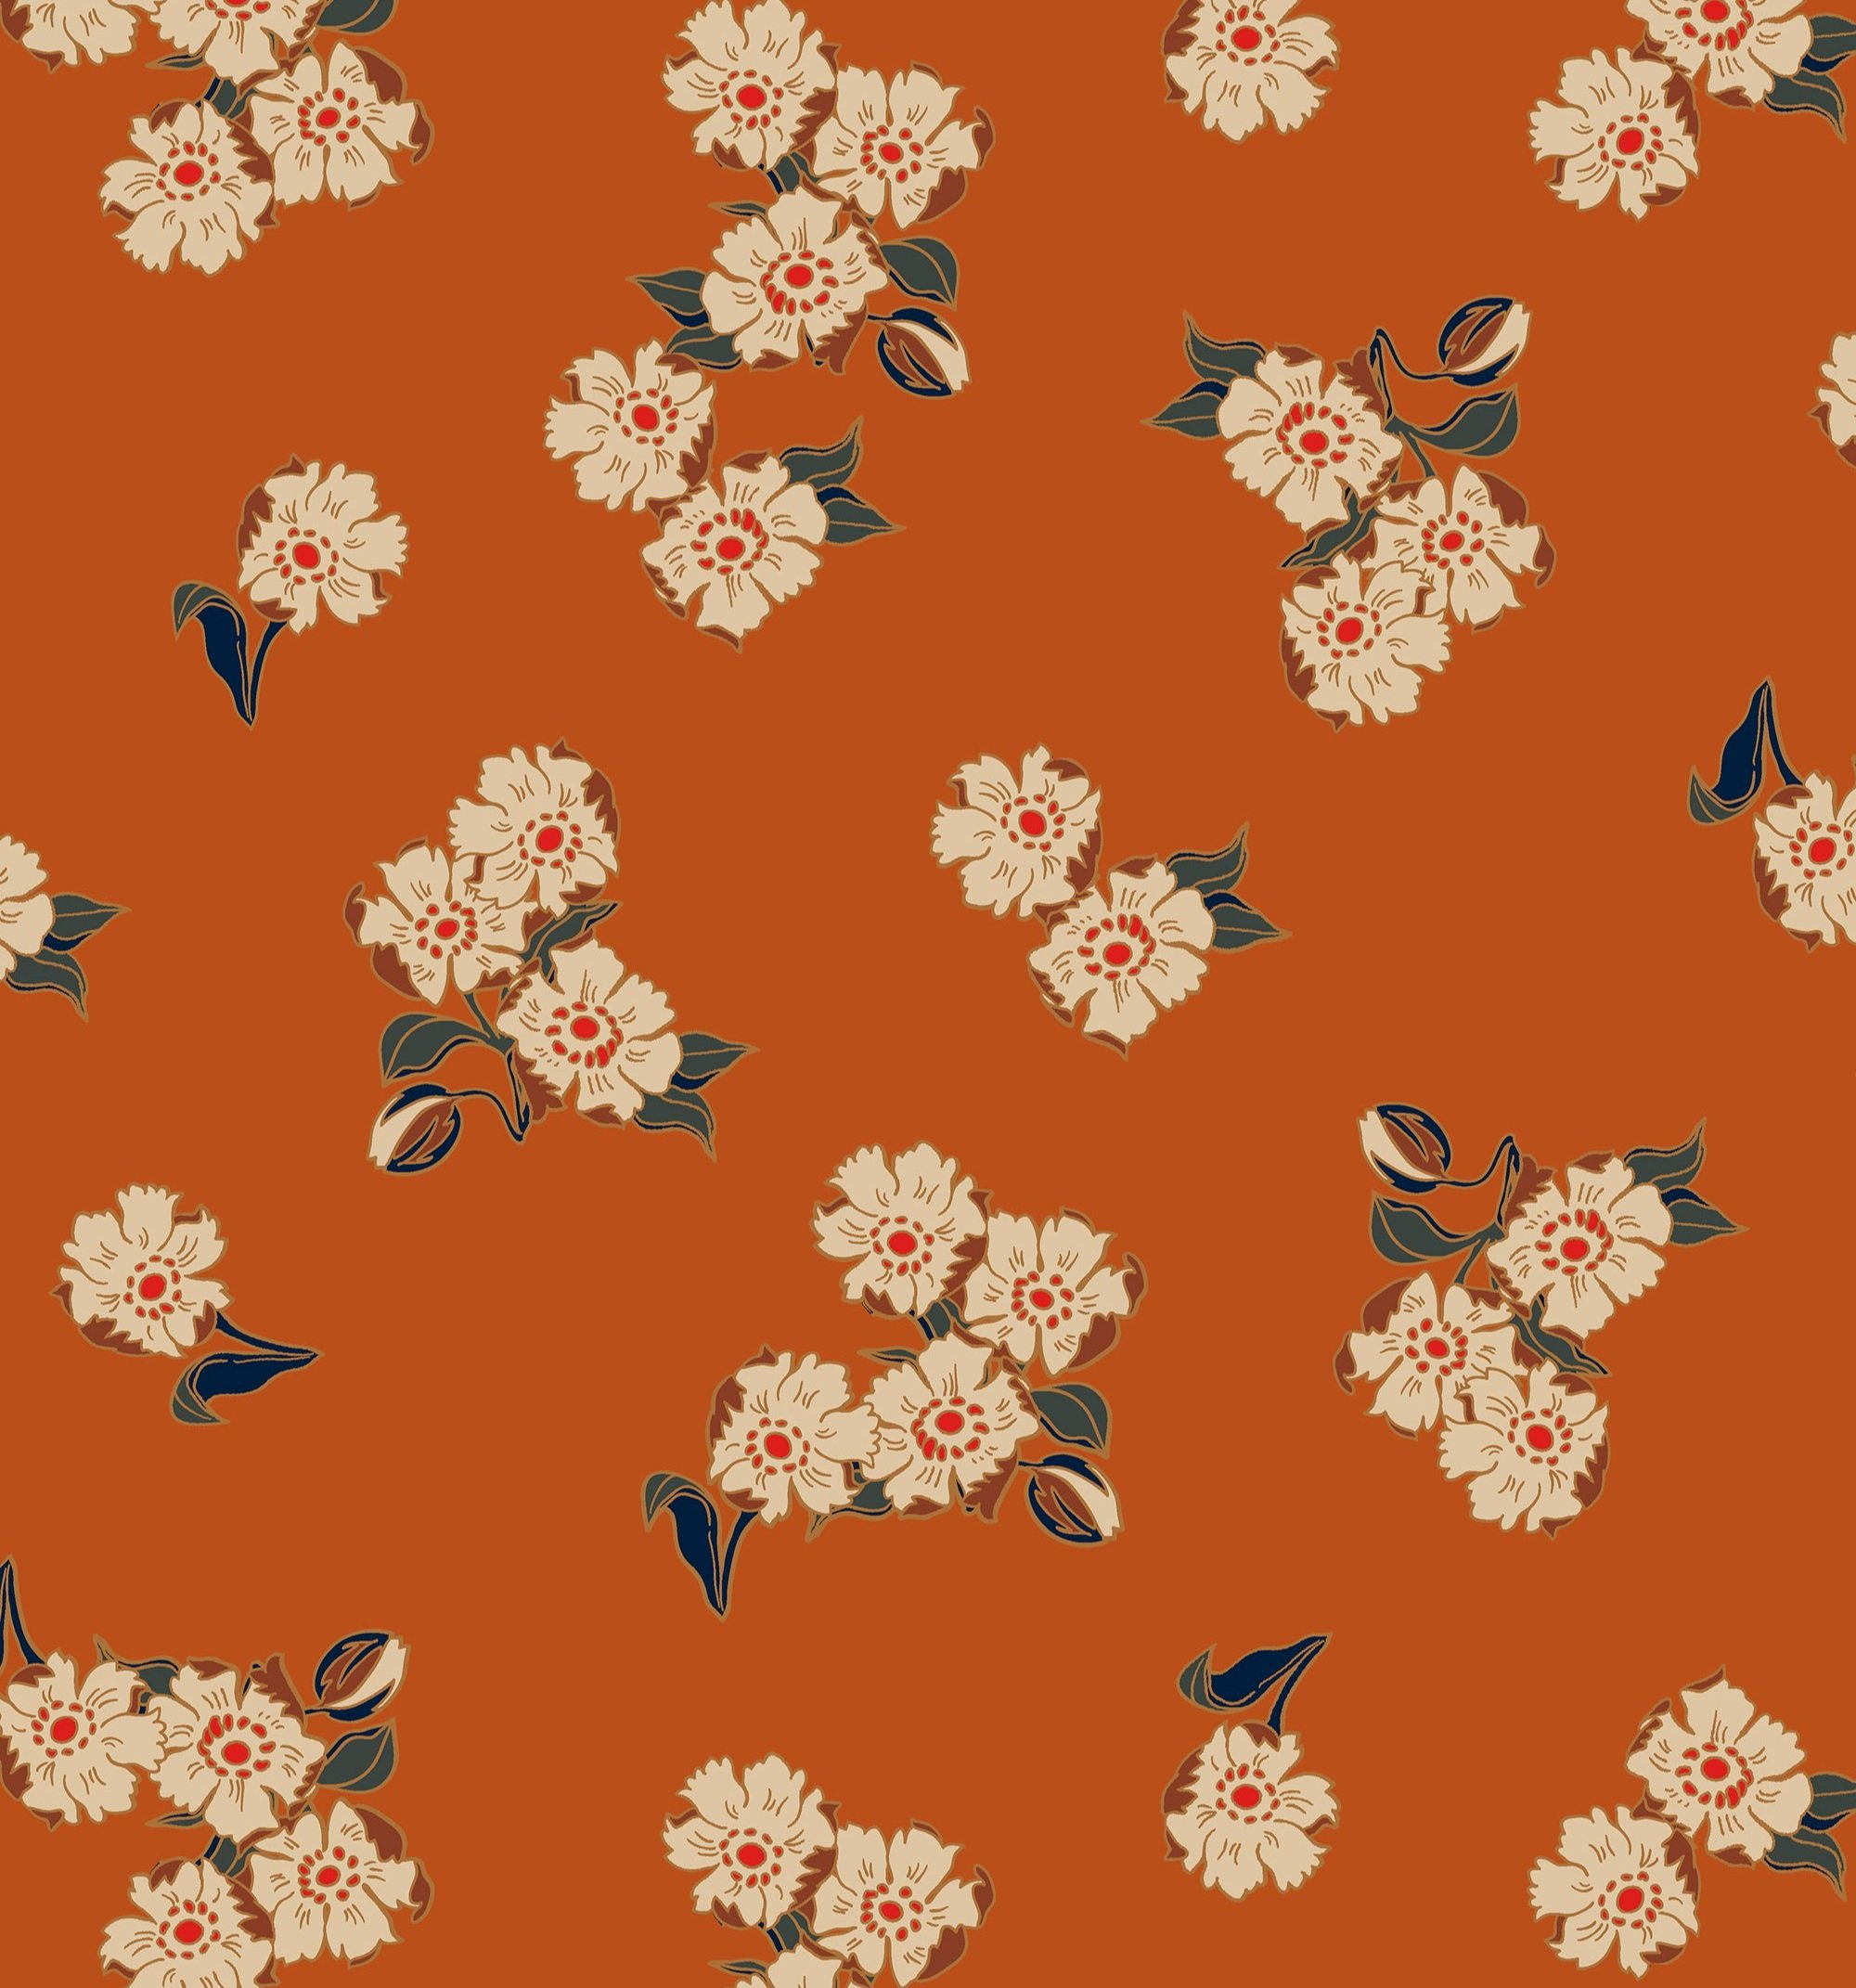 Textile Design: Florals